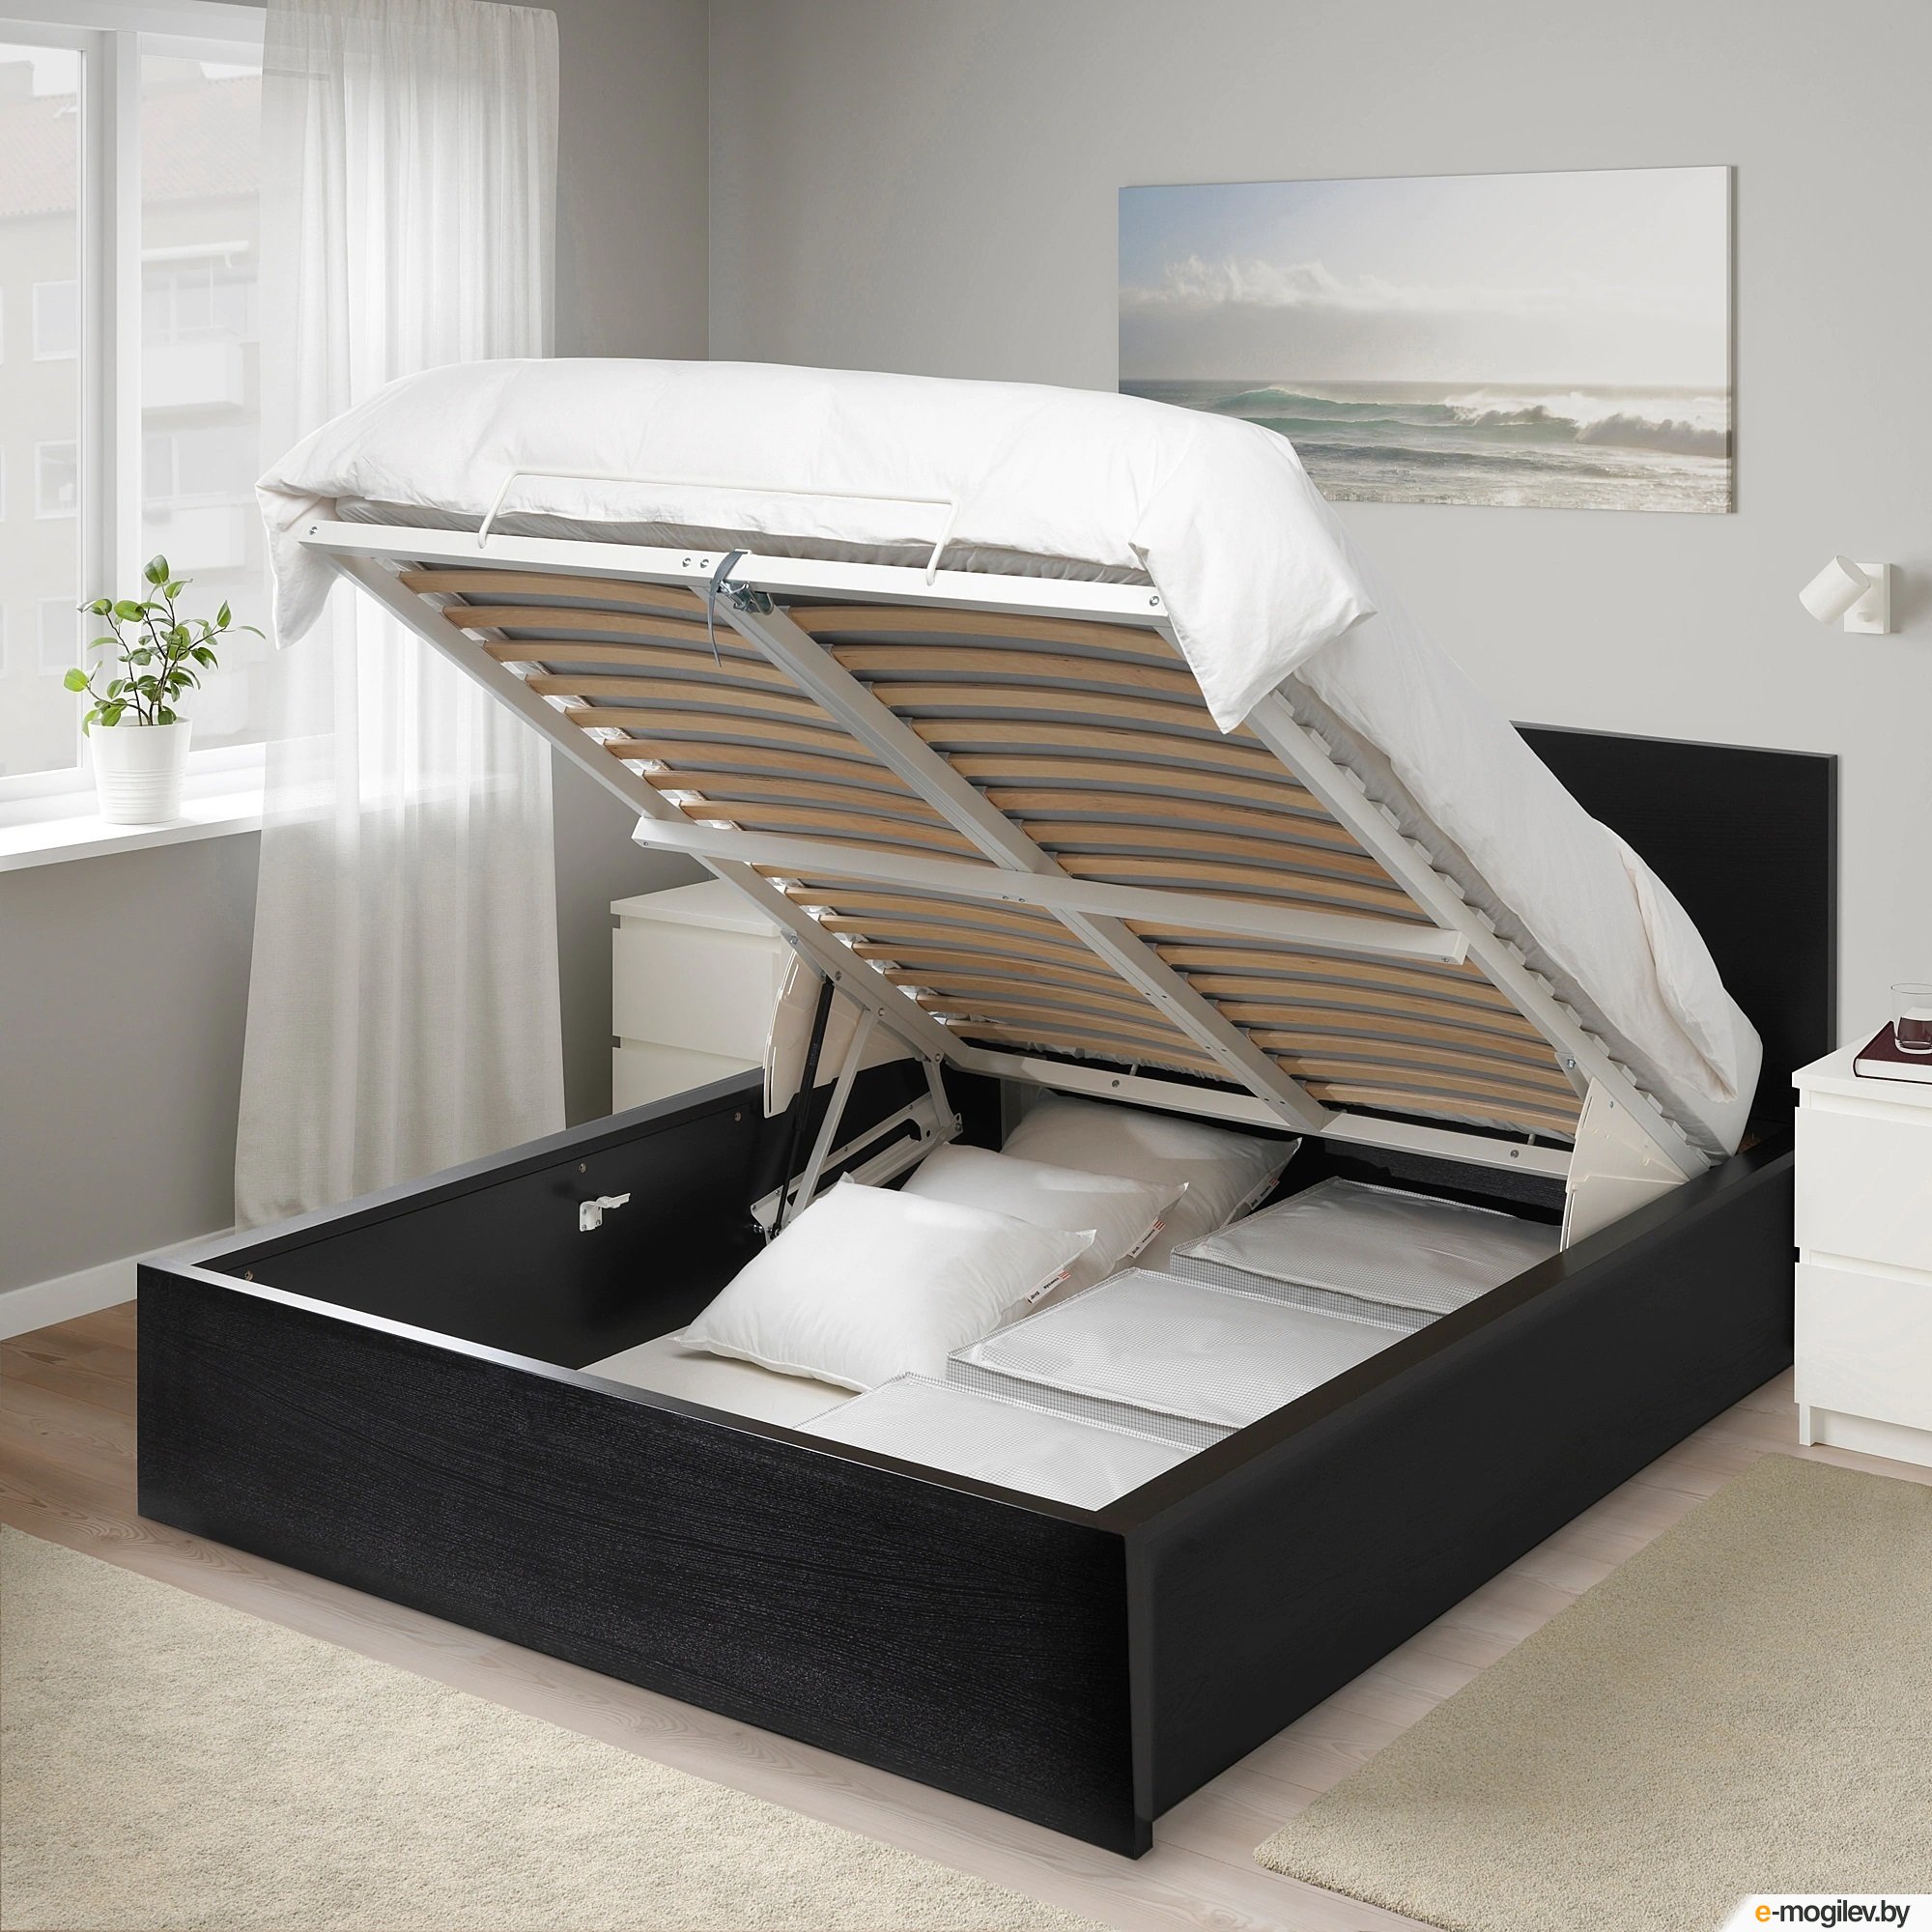 Спб купить кровать с подъемным механизмом 160х200. Кровать МАЛЬМ икеа. Кровать икеа Malm 200 180. 160 200 Ikea Bed Malm. Ikea Malm кровать 160х200.